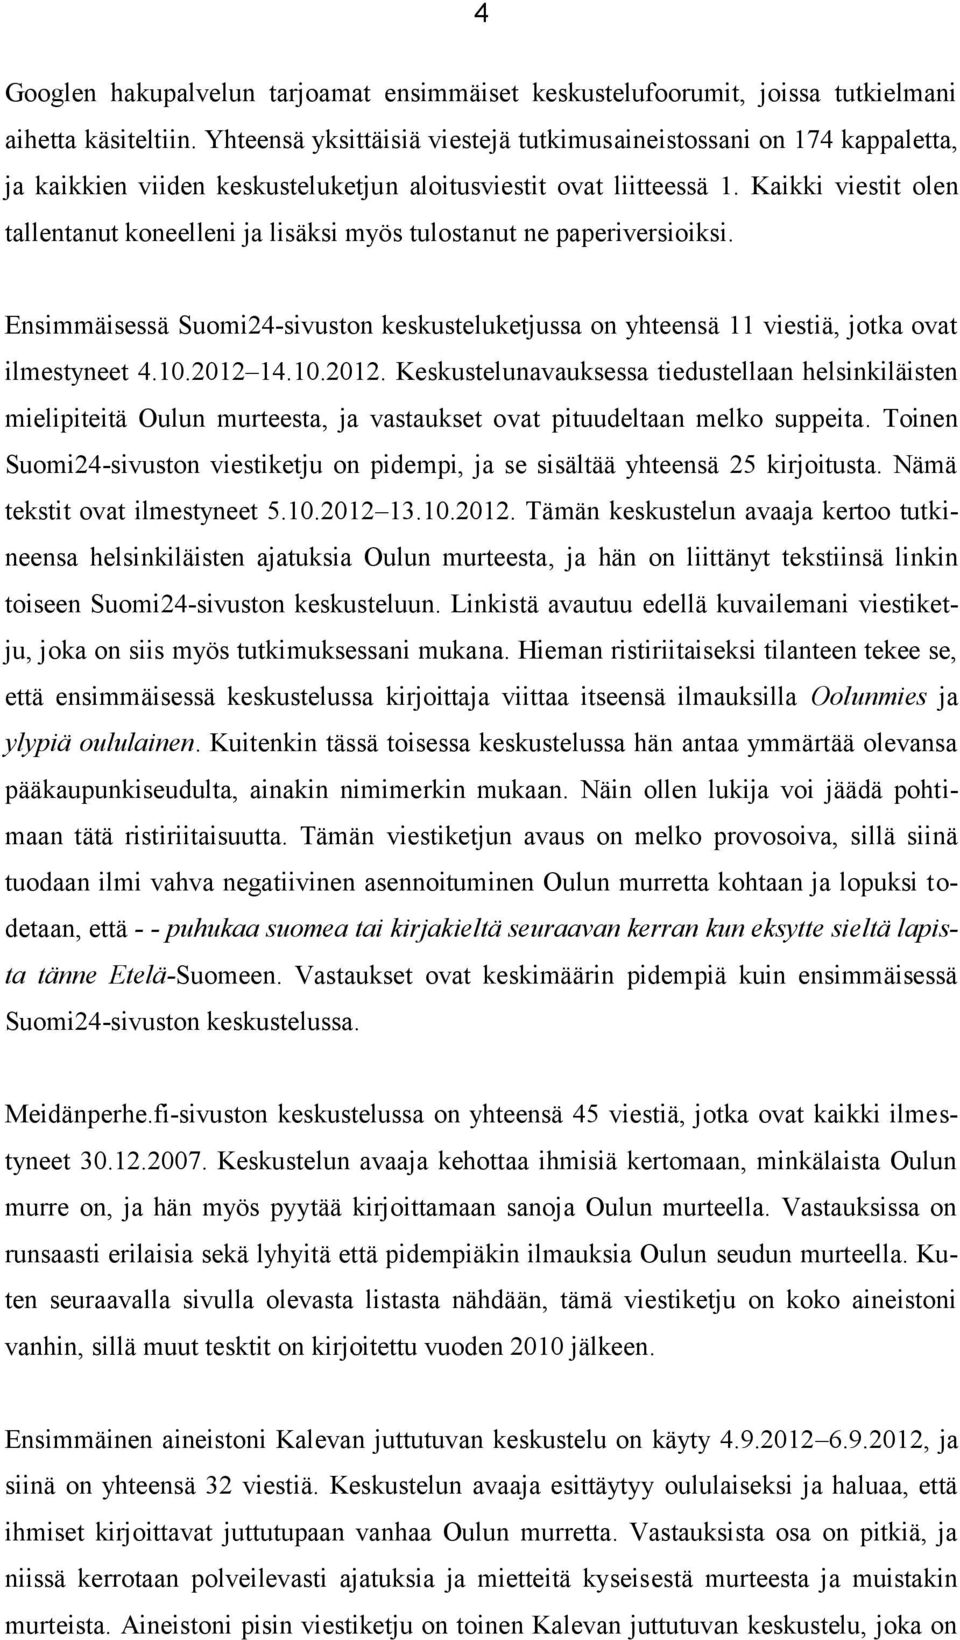 Kaikki viestit olen tallentanut koneelleni ja lisäksi myös tulostanut ne paperiversioiksi. Ensimmäisessä Suomi24-sivuston keskusteluketjussa on yhteensä 11 viestiä, jotka ovat ilmestyneet 4.10.